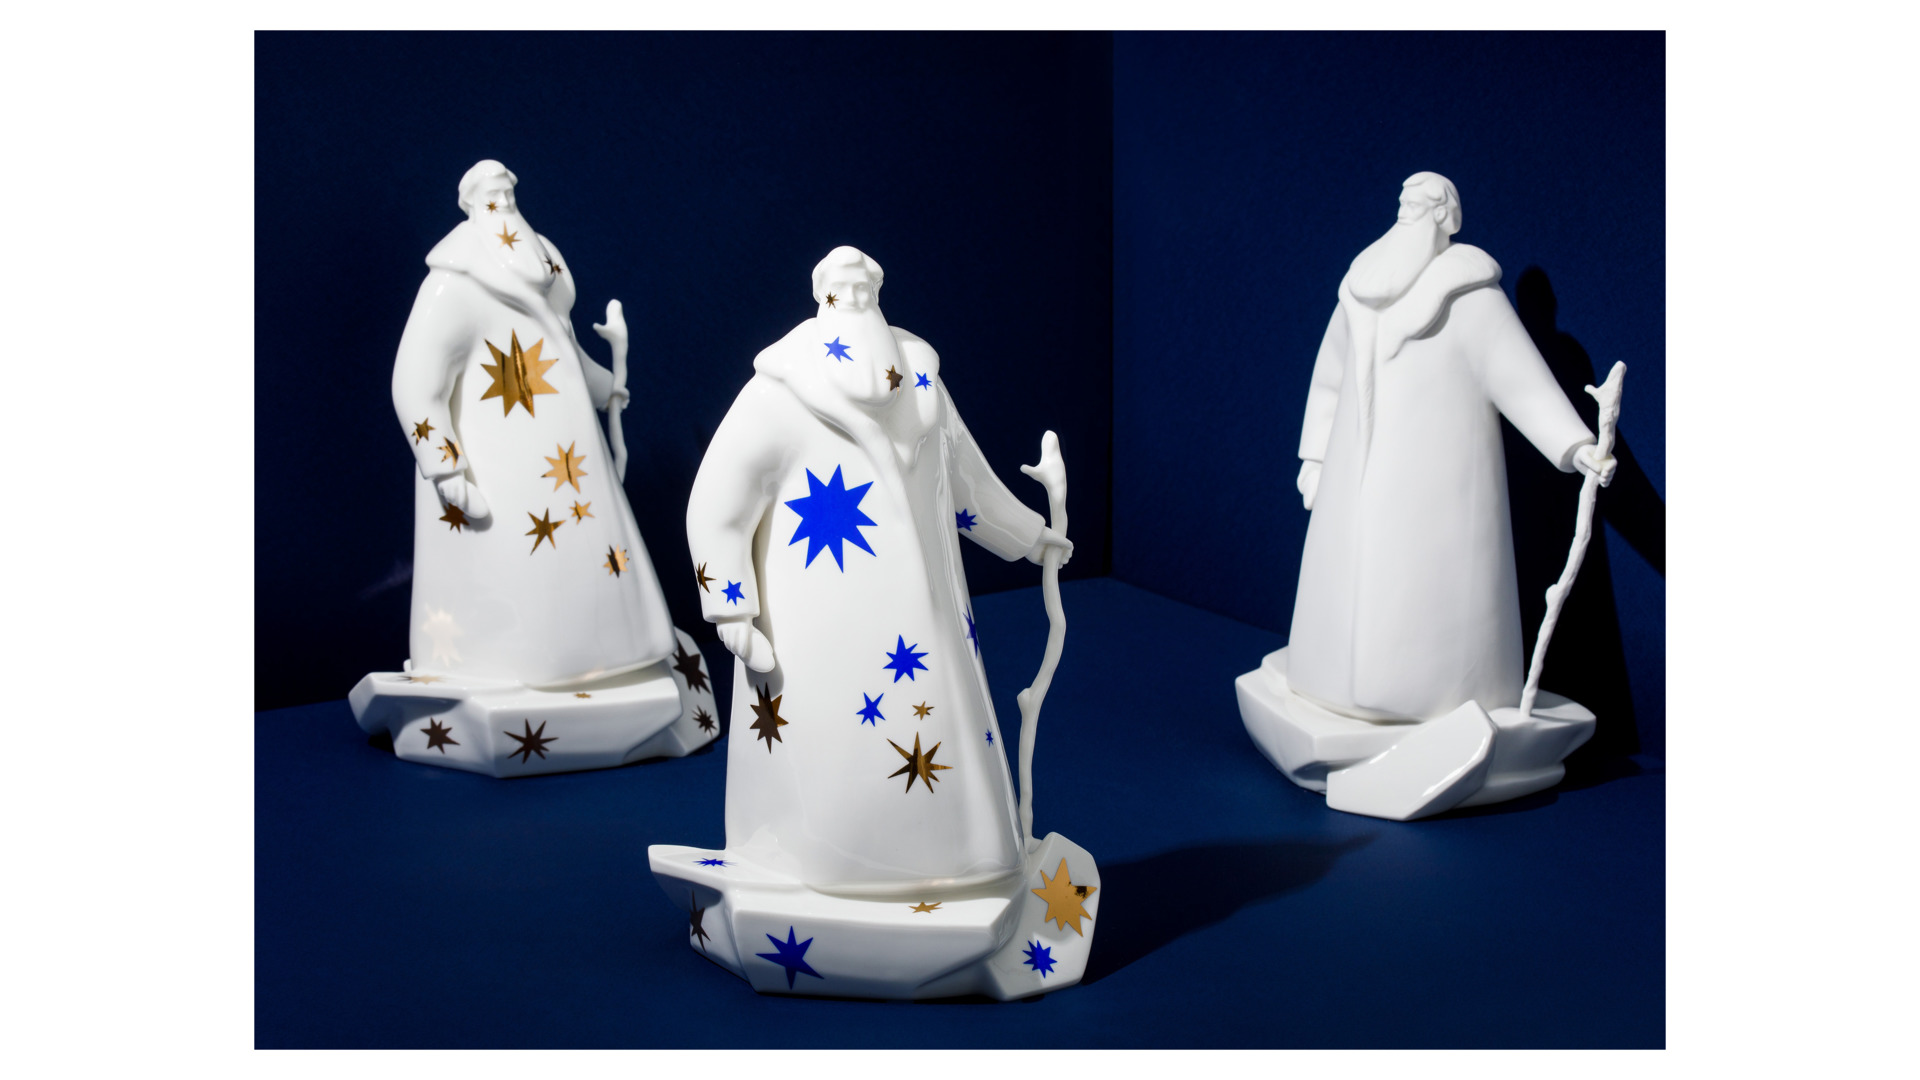 Скульптура Shirokov Дед Мороз 33x18 см, фарфор костяной, белая с золотыми и синими звездами, п/к